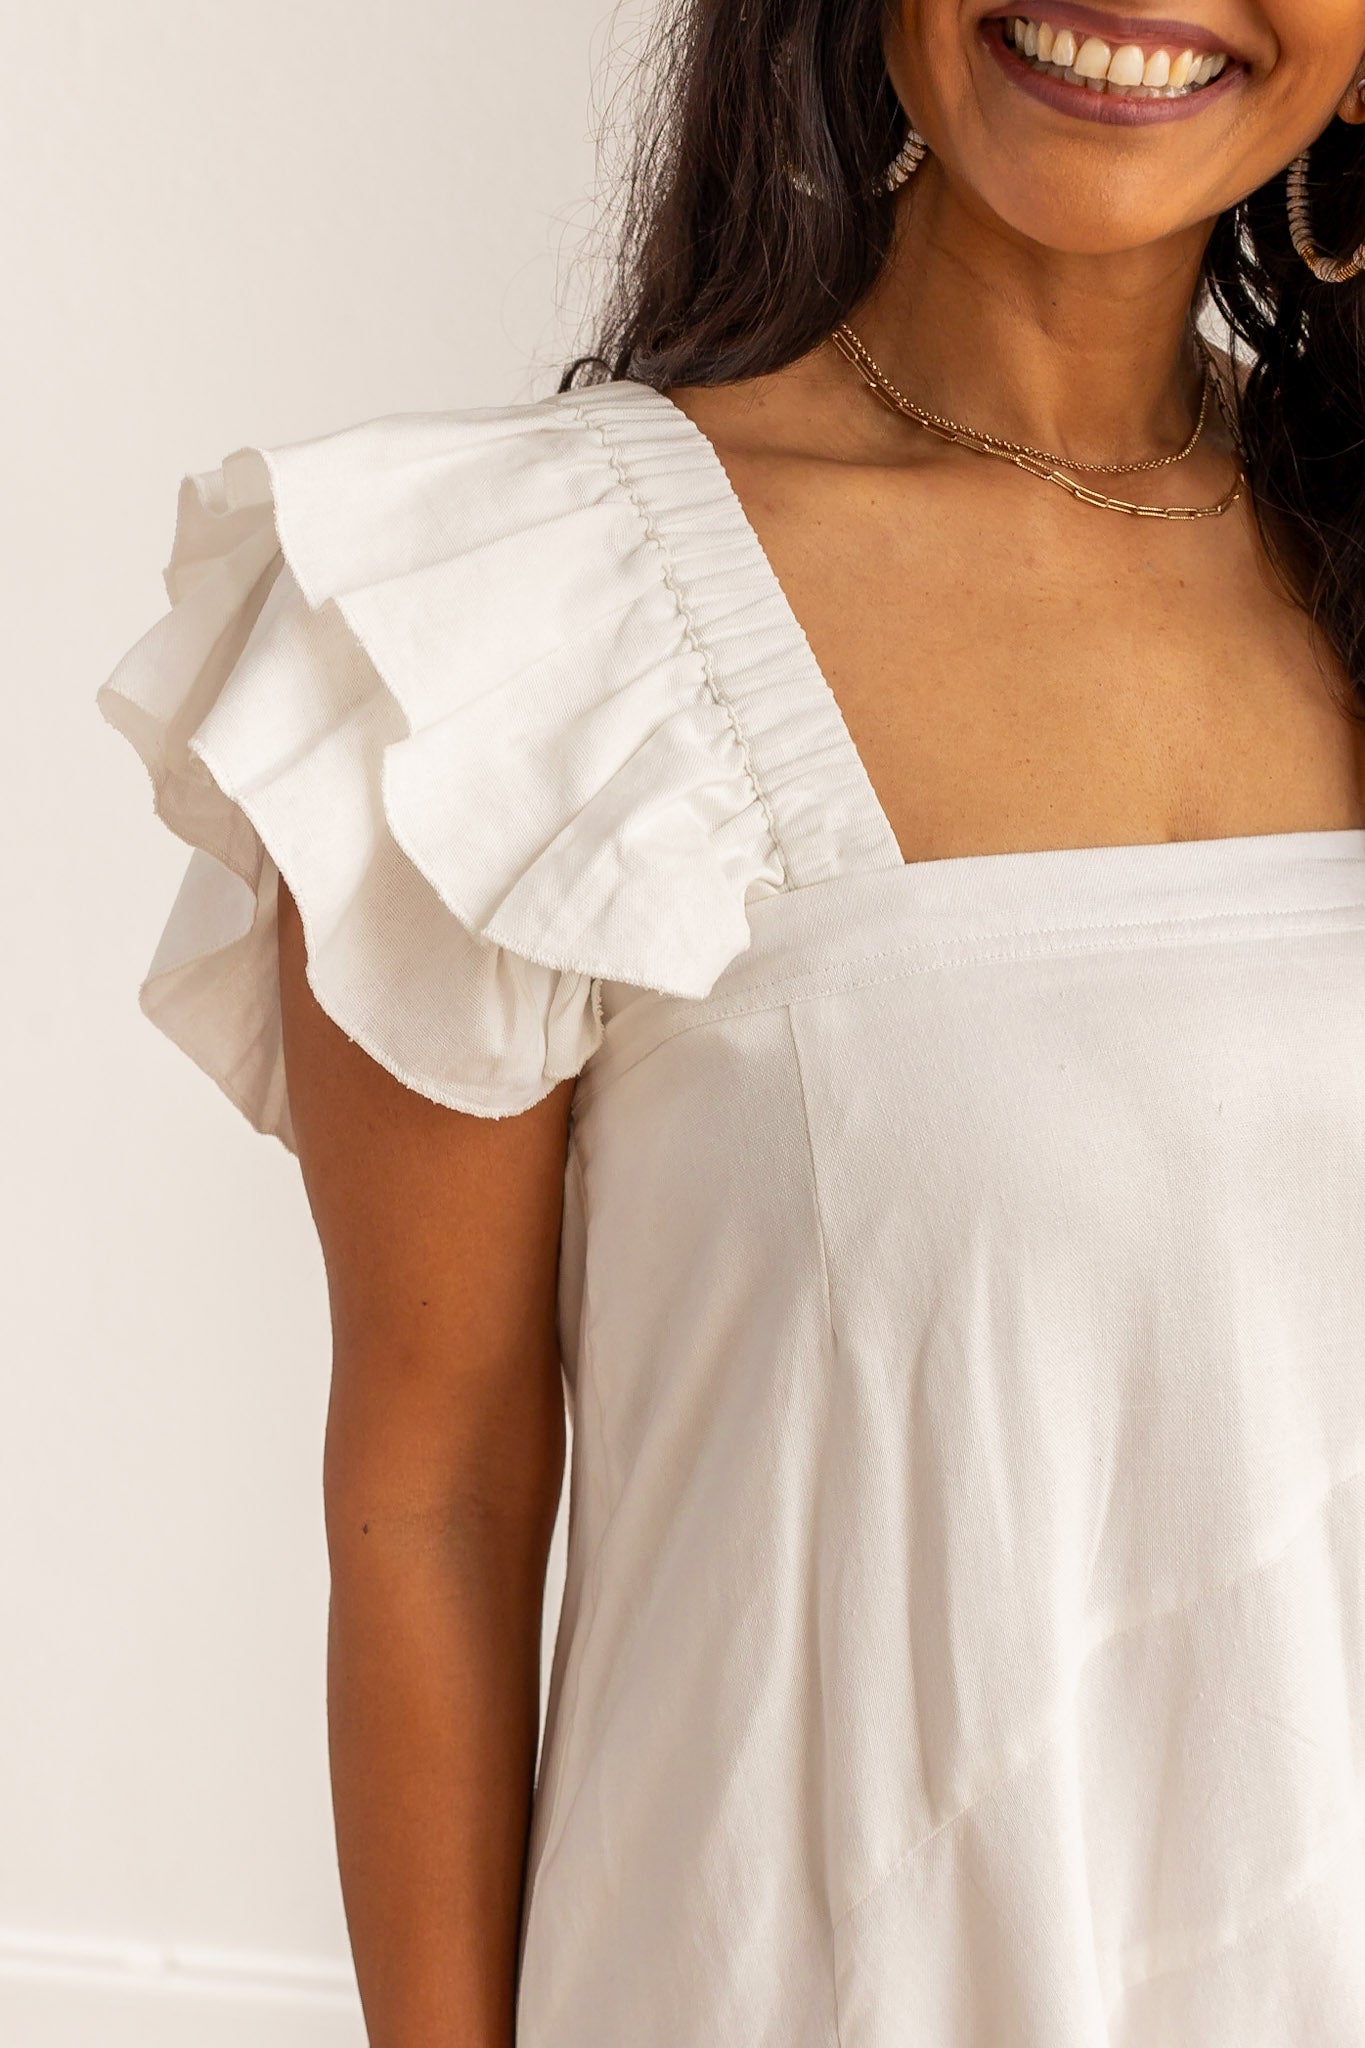 The Stella White Linen Versi Dress